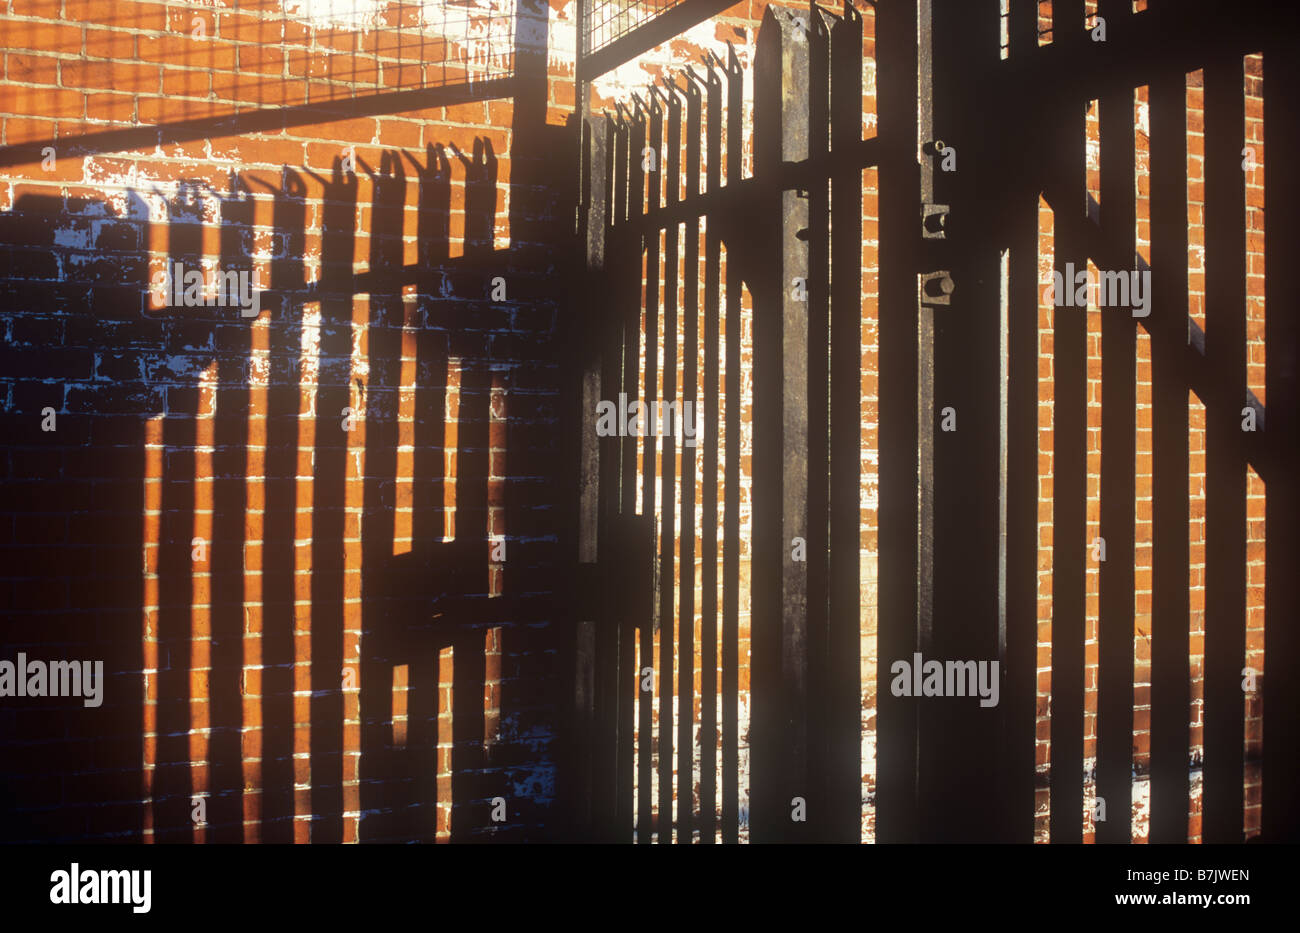 Black metal haute sécurité surmontées de pointes inclinées et treillis métallique d'ombres profondes sur mur brique orange en lumière chaude Banque D'Images